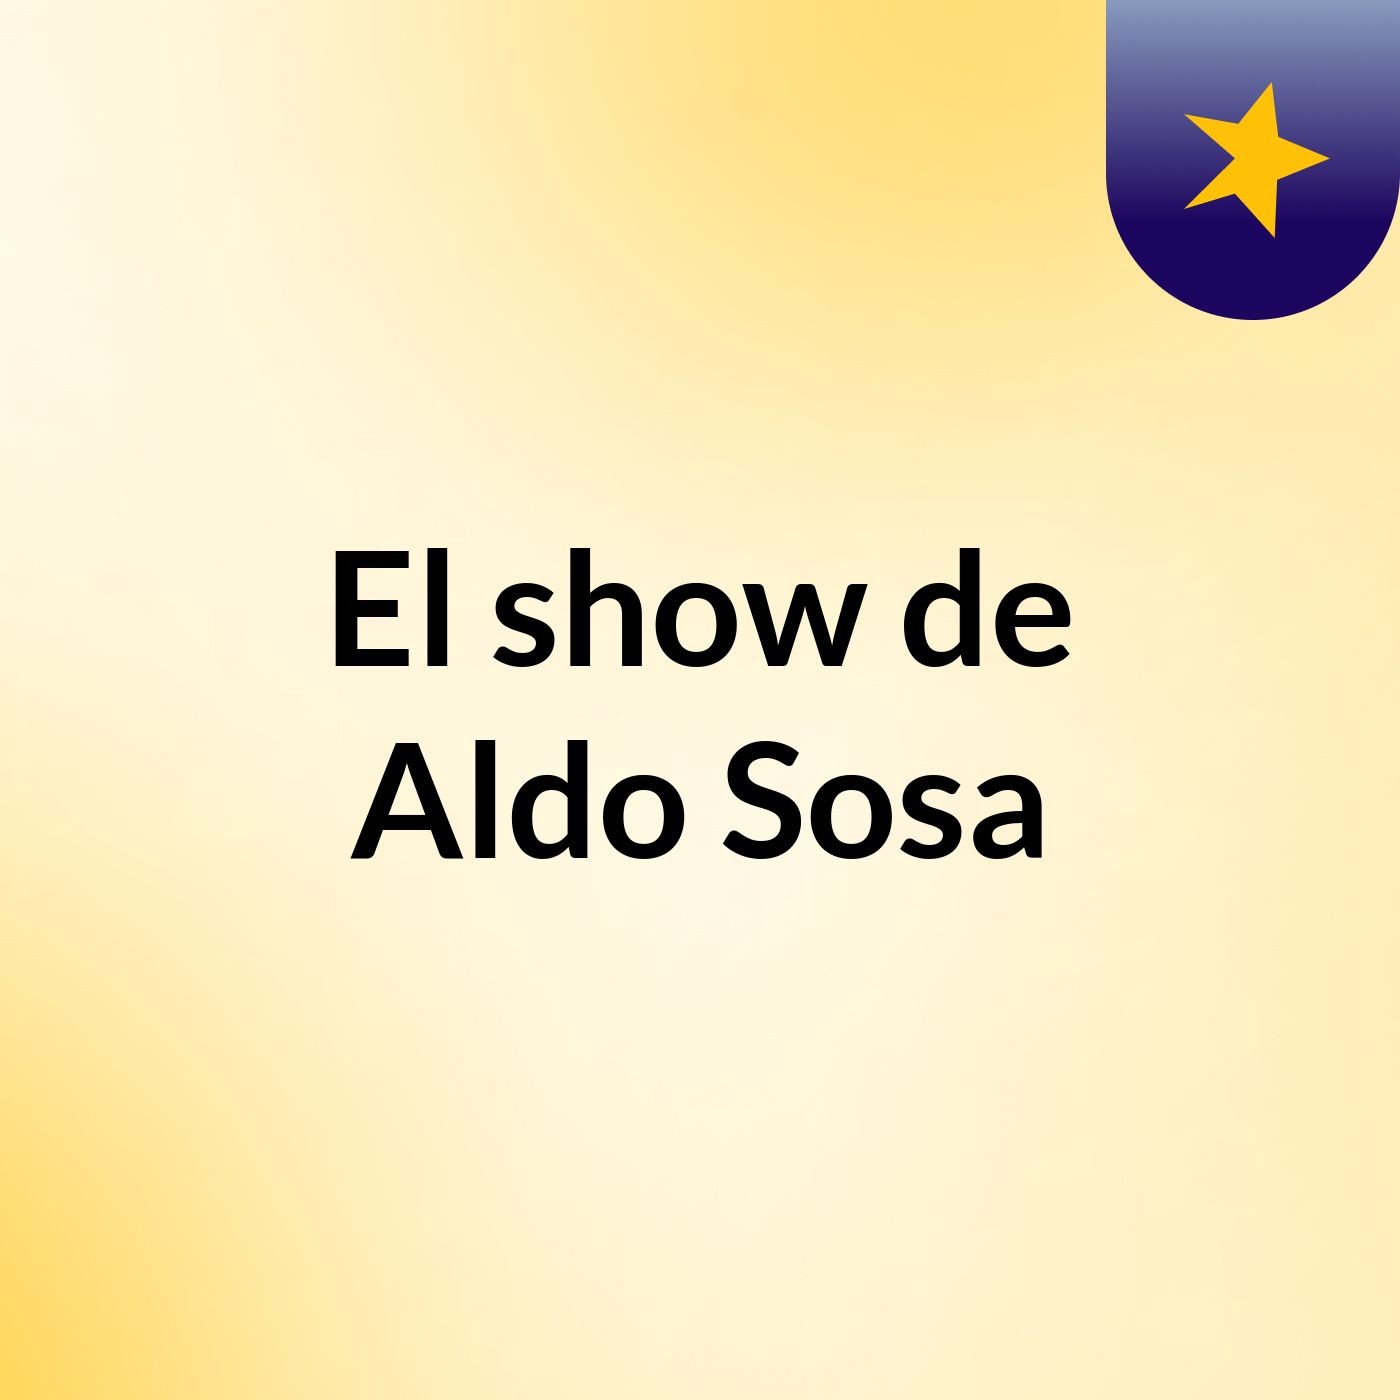 El show de Aldo Sosa